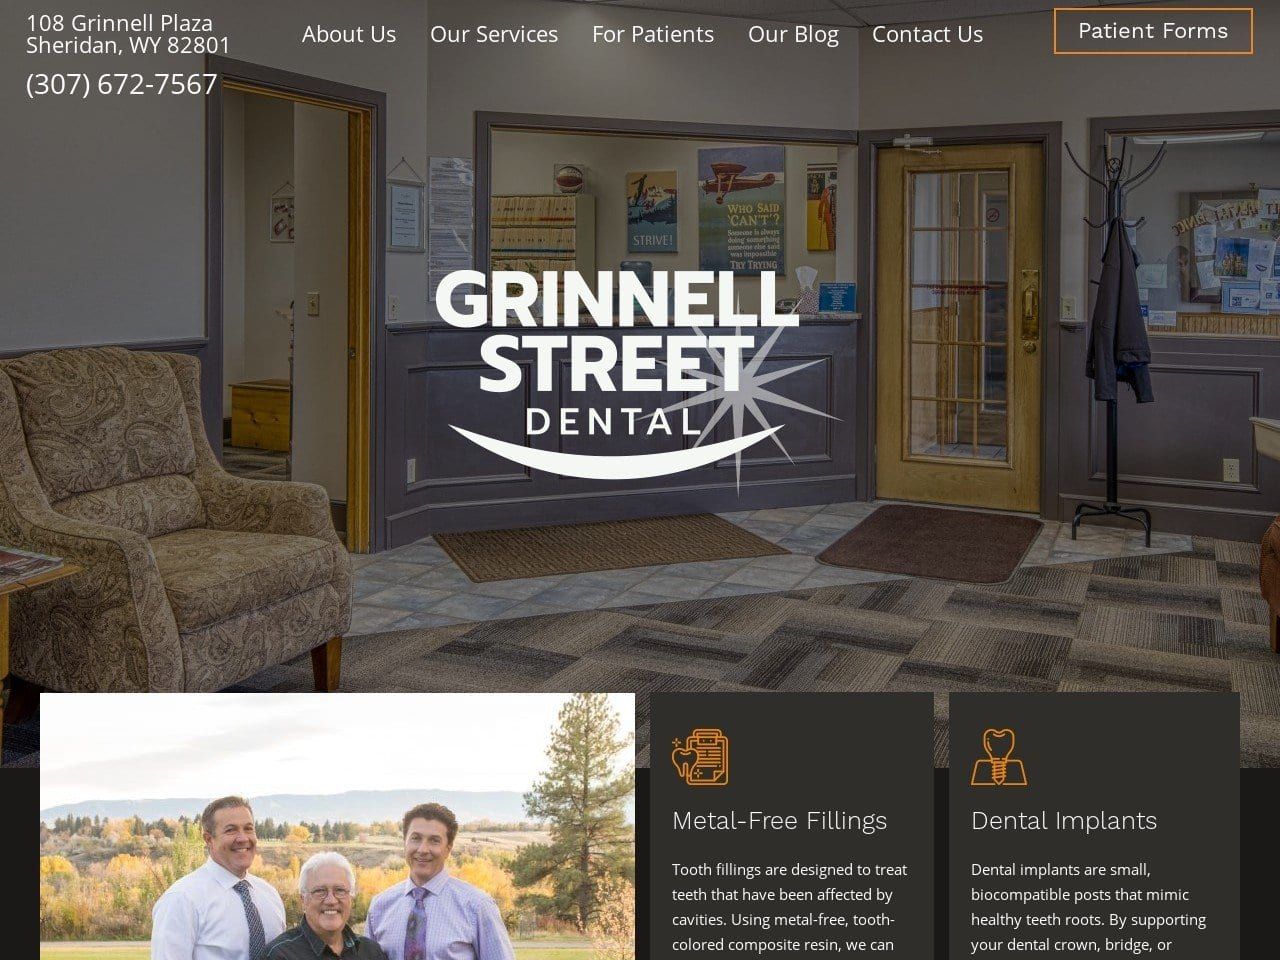 Grinnell Street Dental Website Screenshot from grinnellstreetdental.com